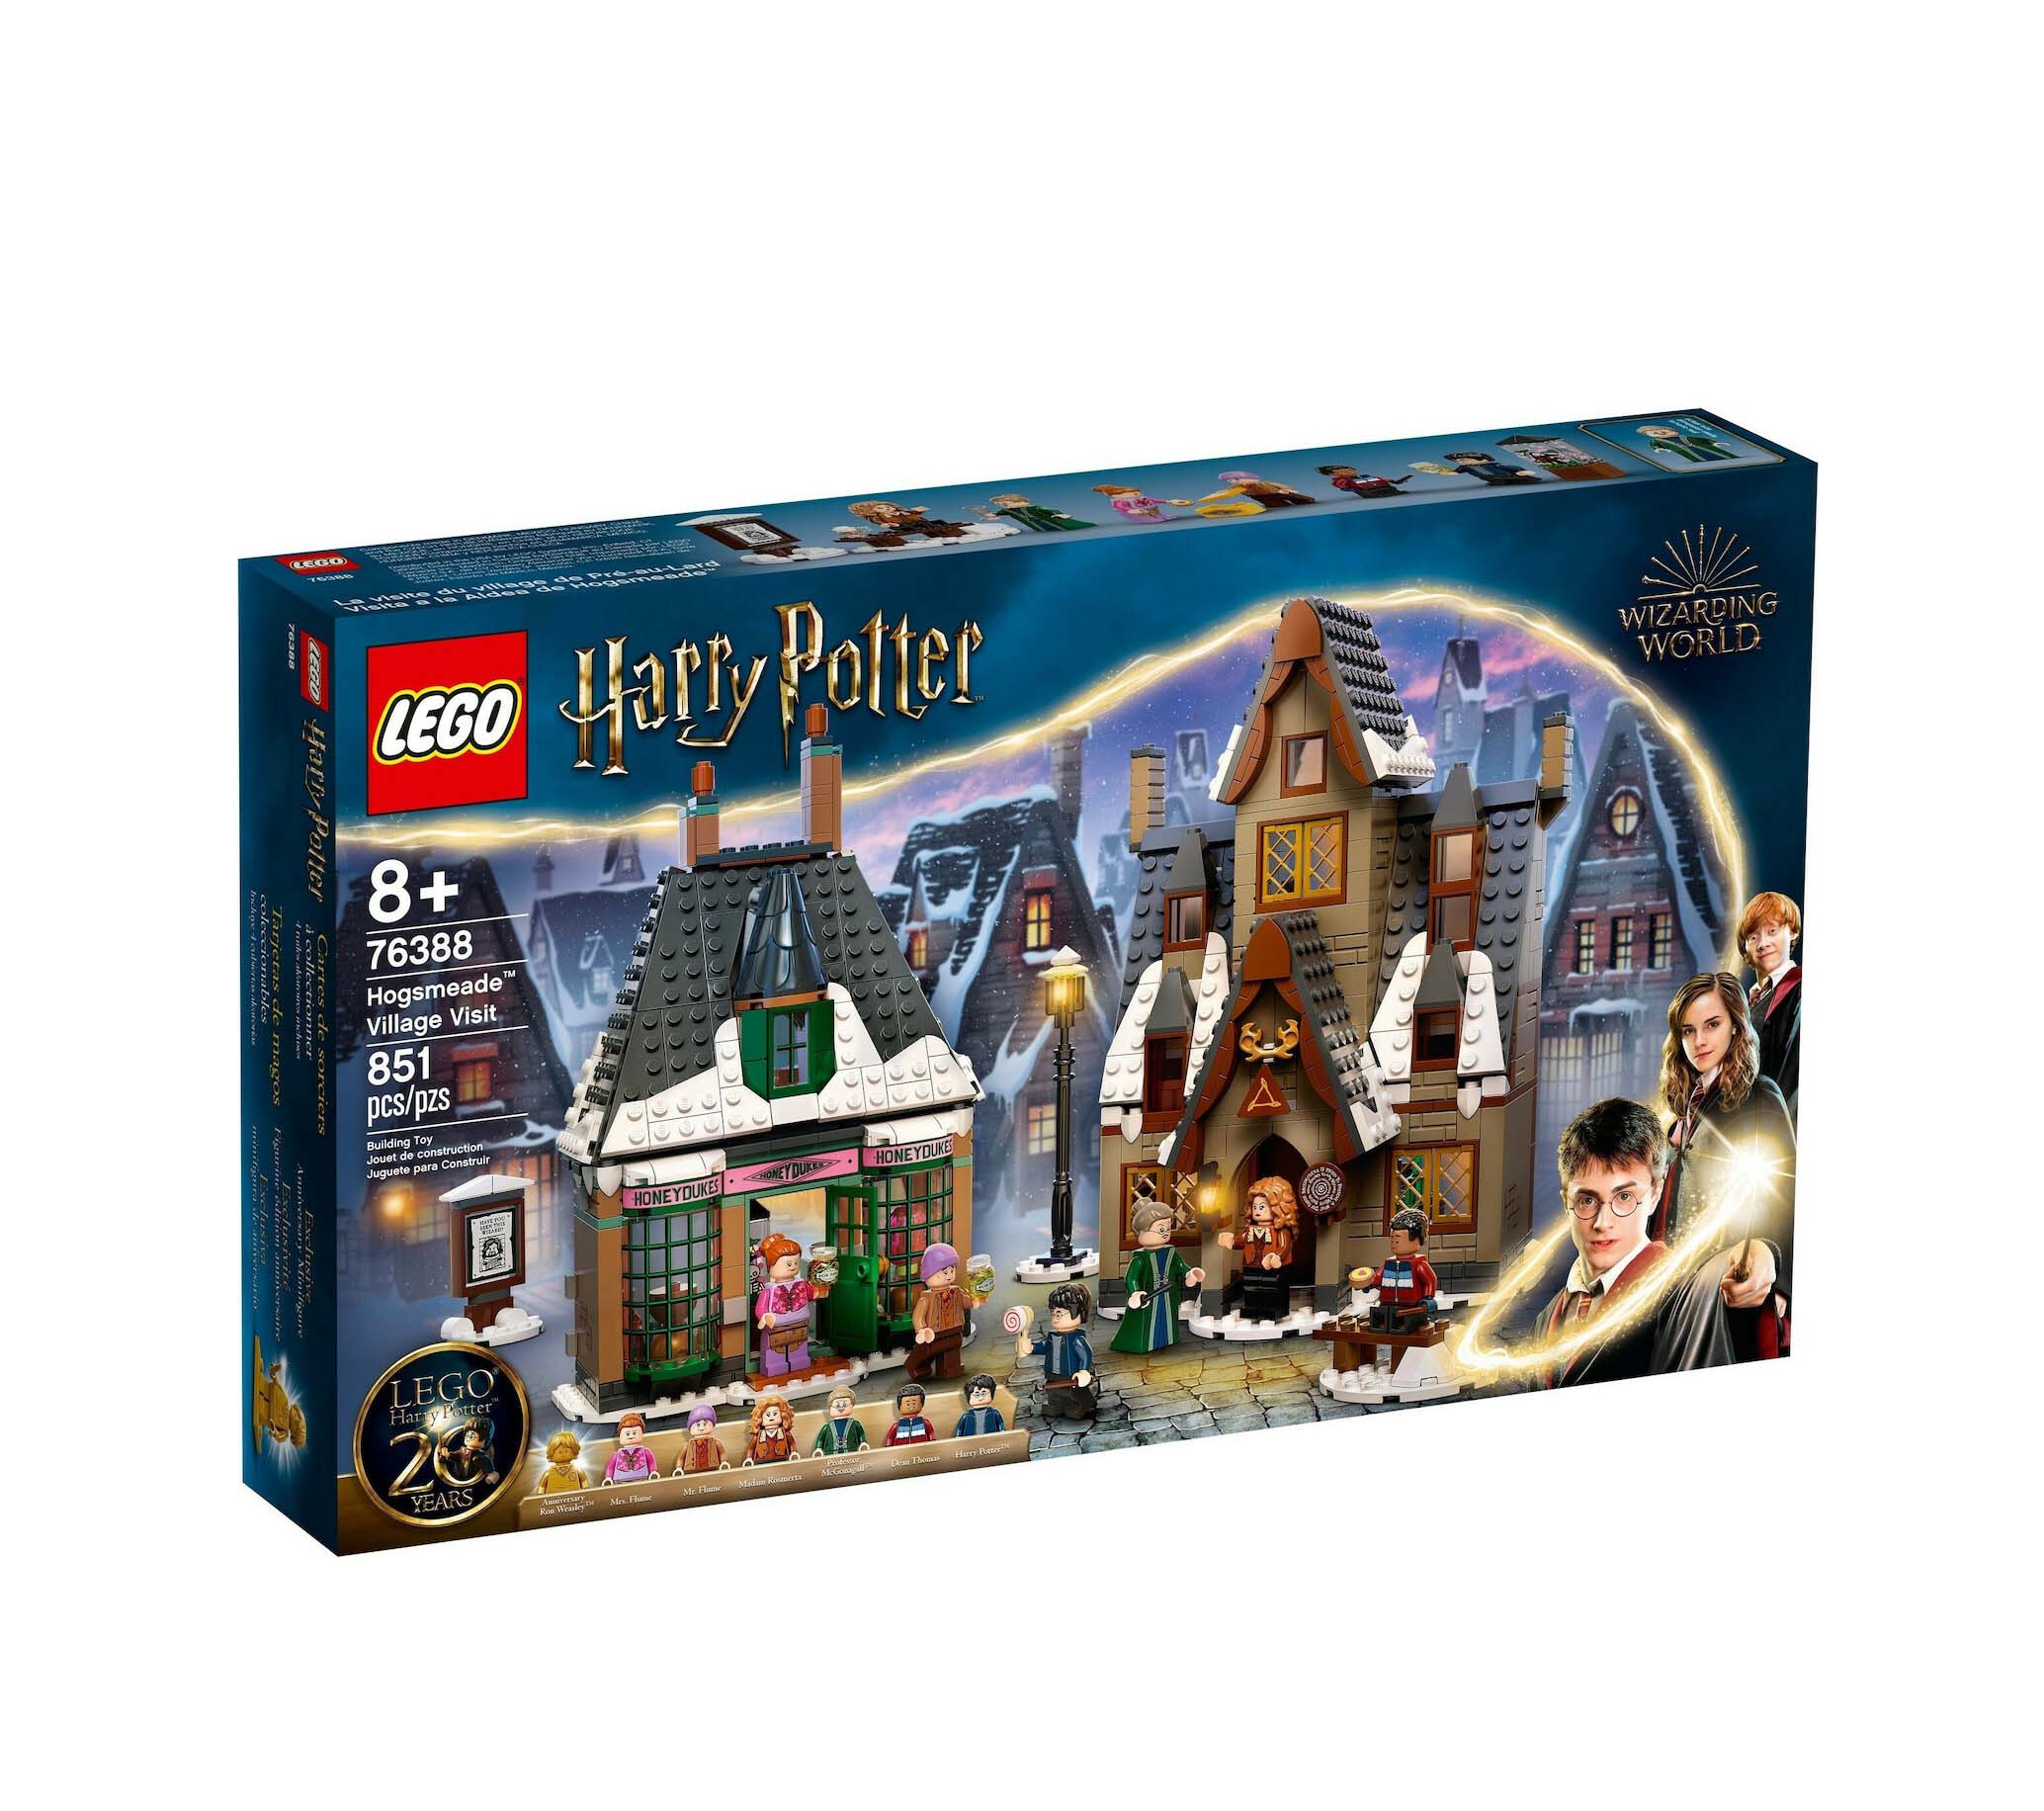 Lego Harry Potter: Hogsmeade Village Visit 76388